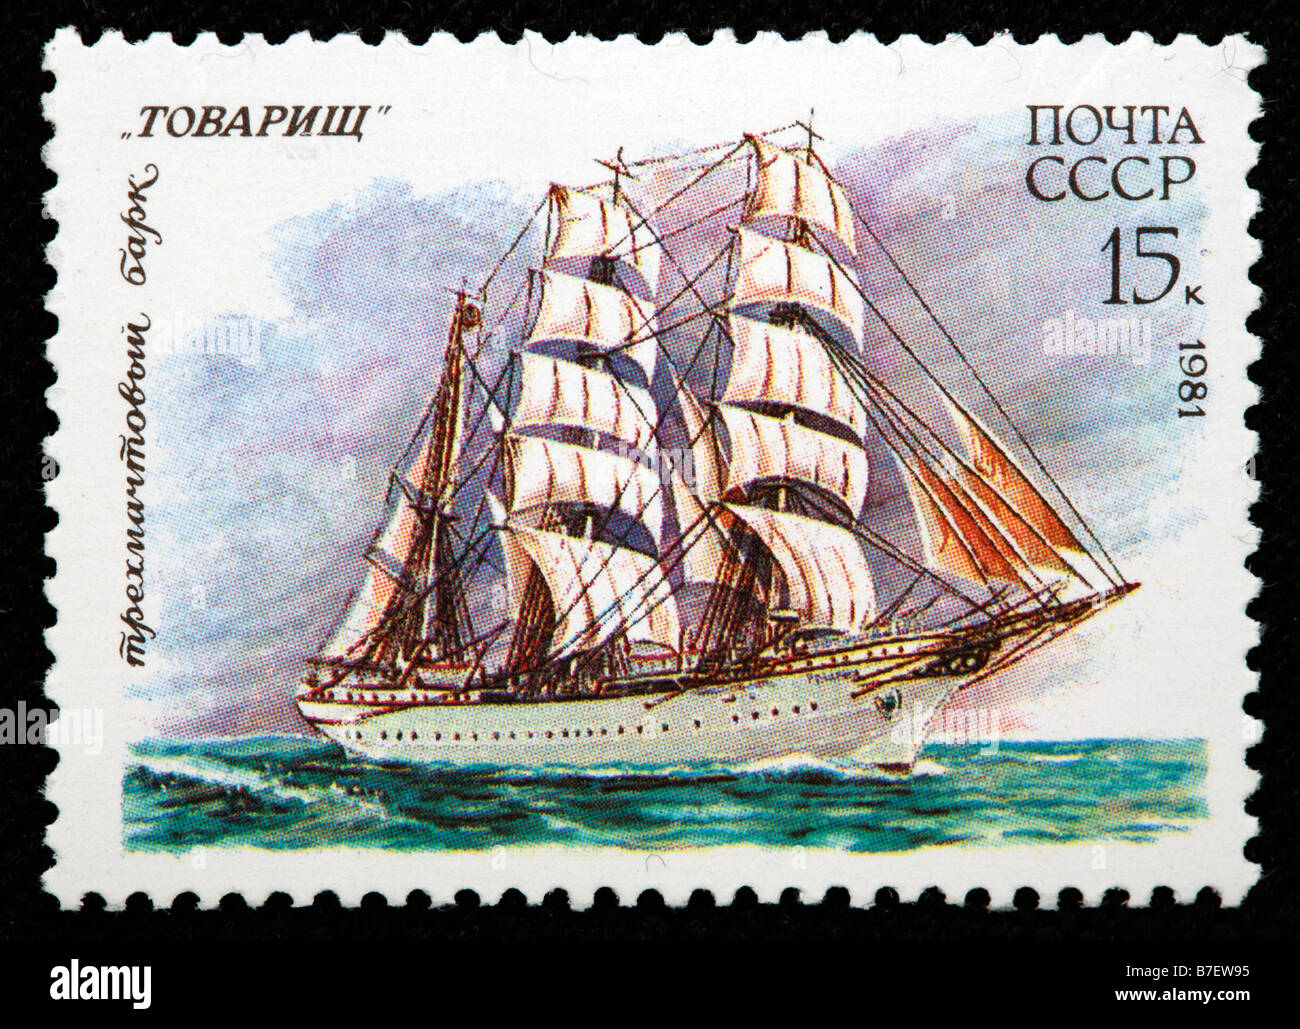 Russische Segelschiff 'Tovarish', Briefmarke, UdSSR, Russland, 1981 Stockfoto